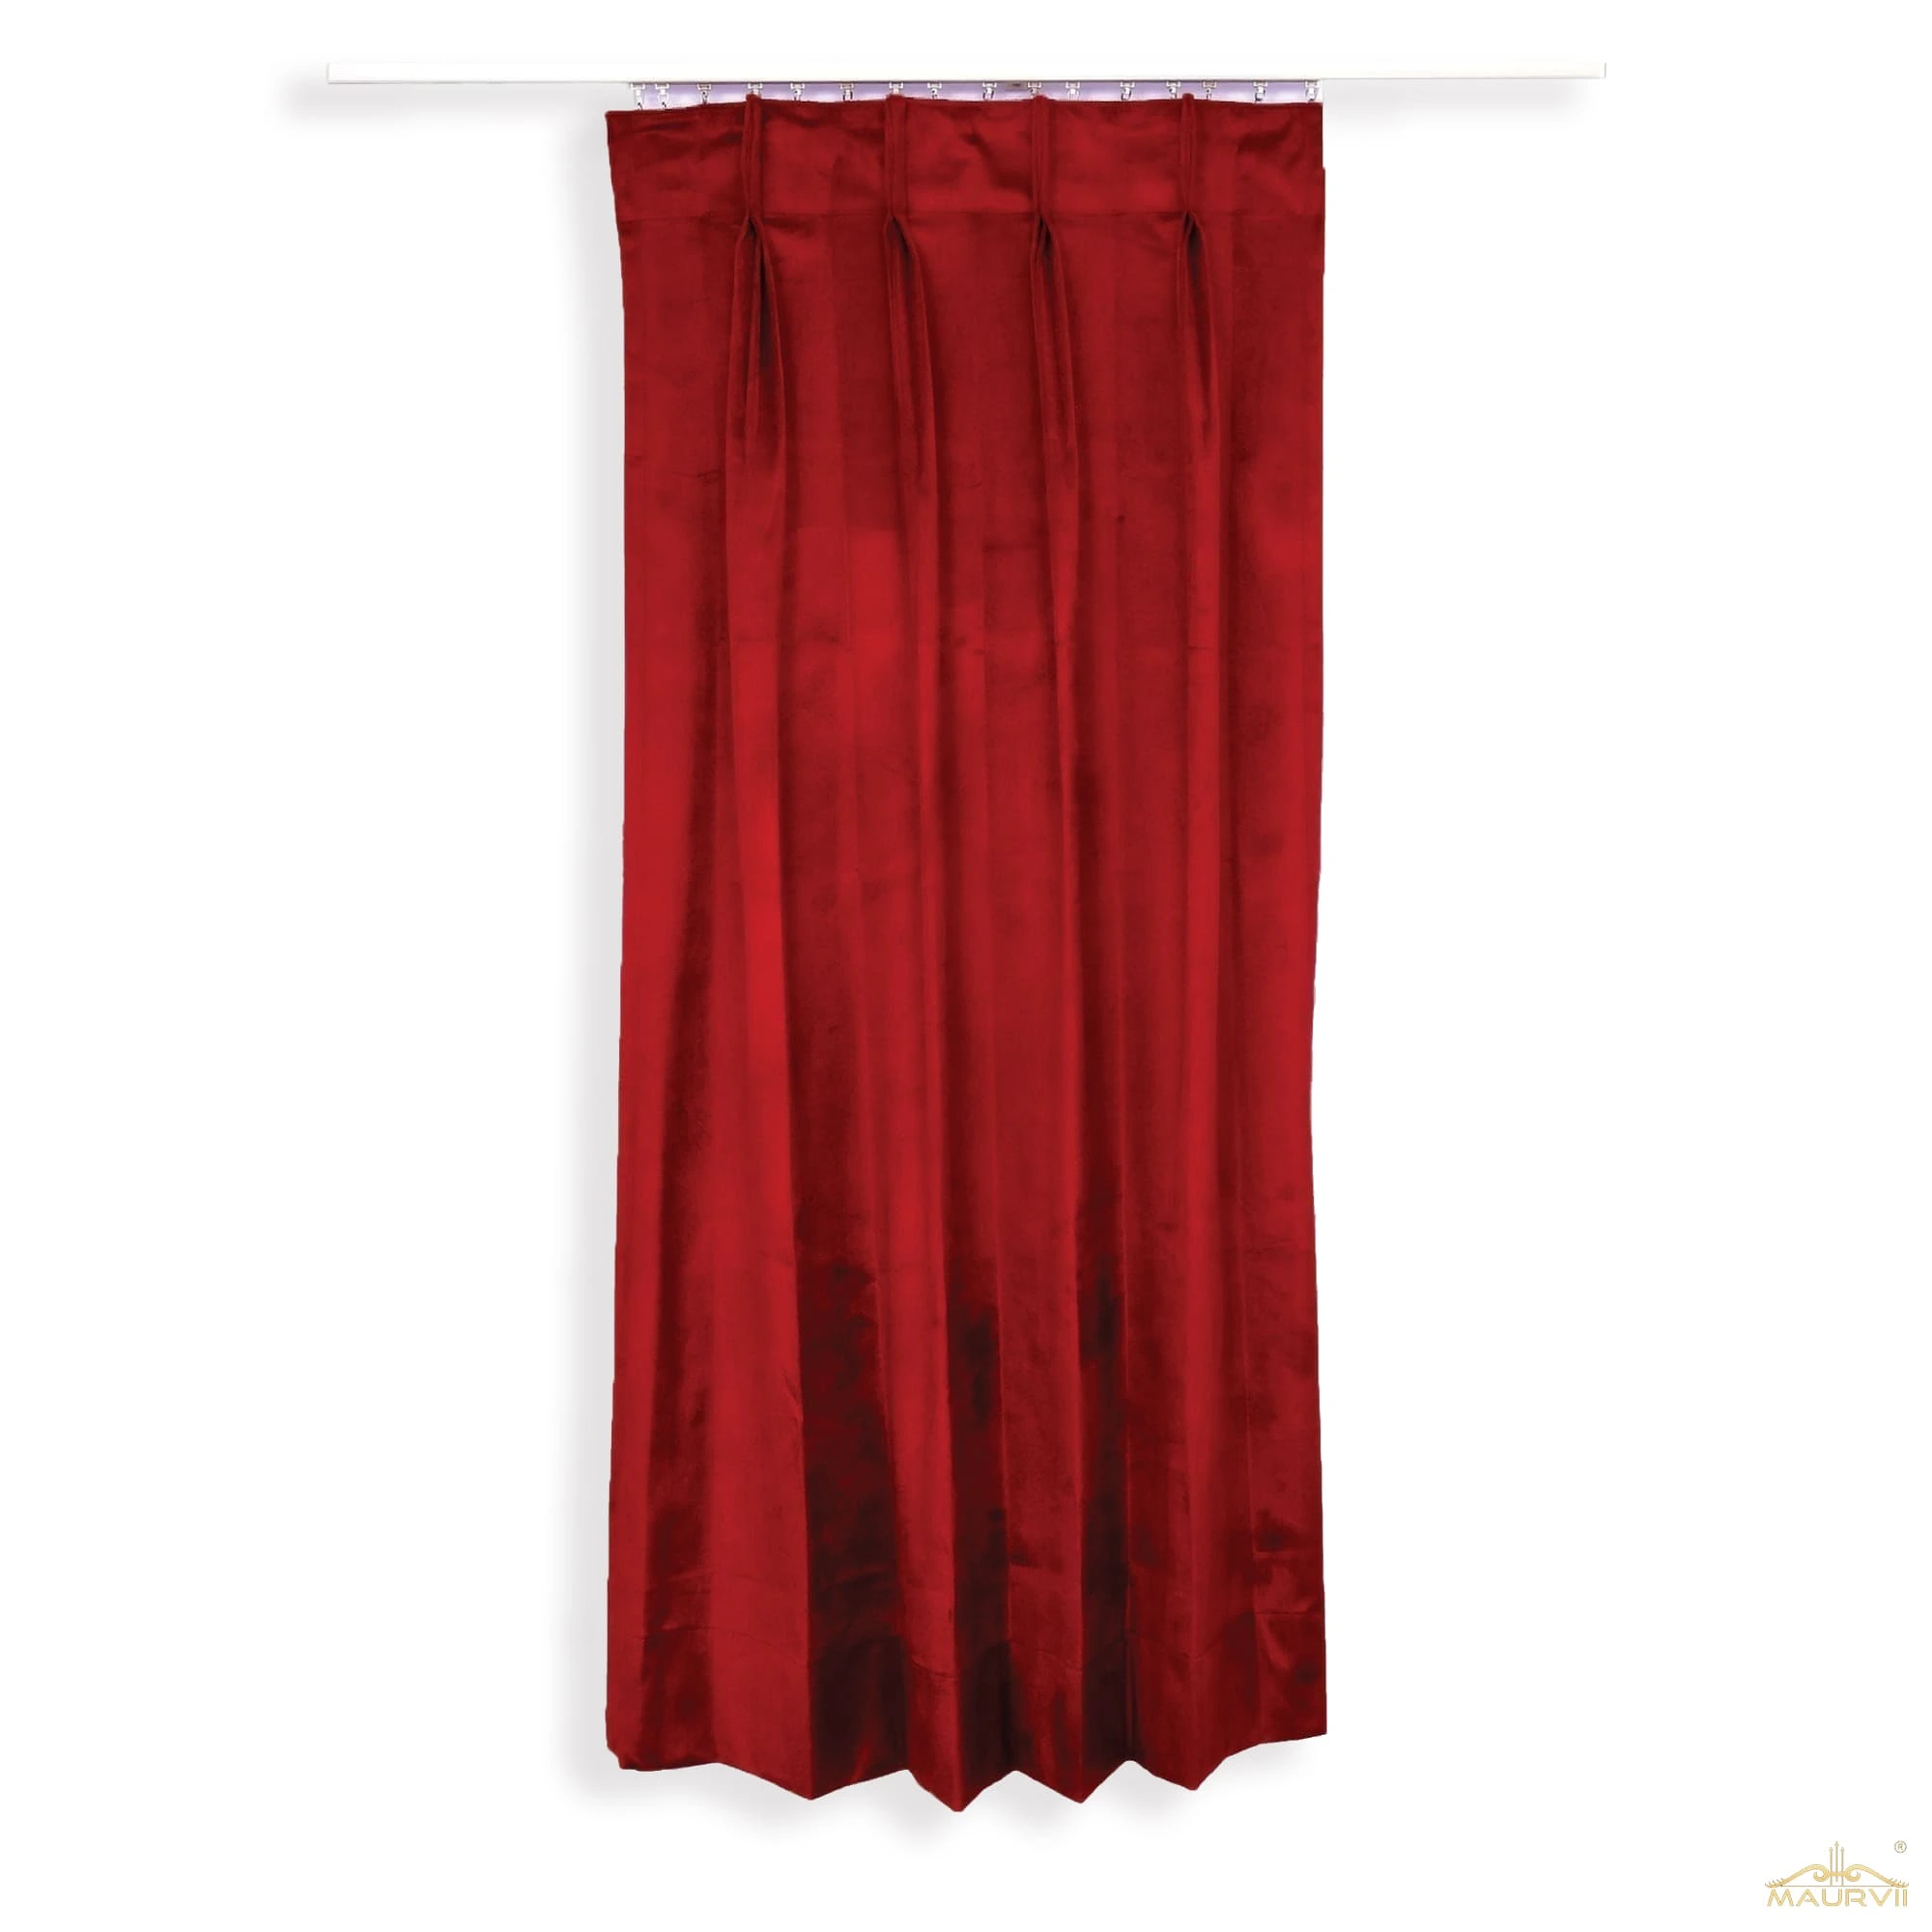 Velvet drapes for theater